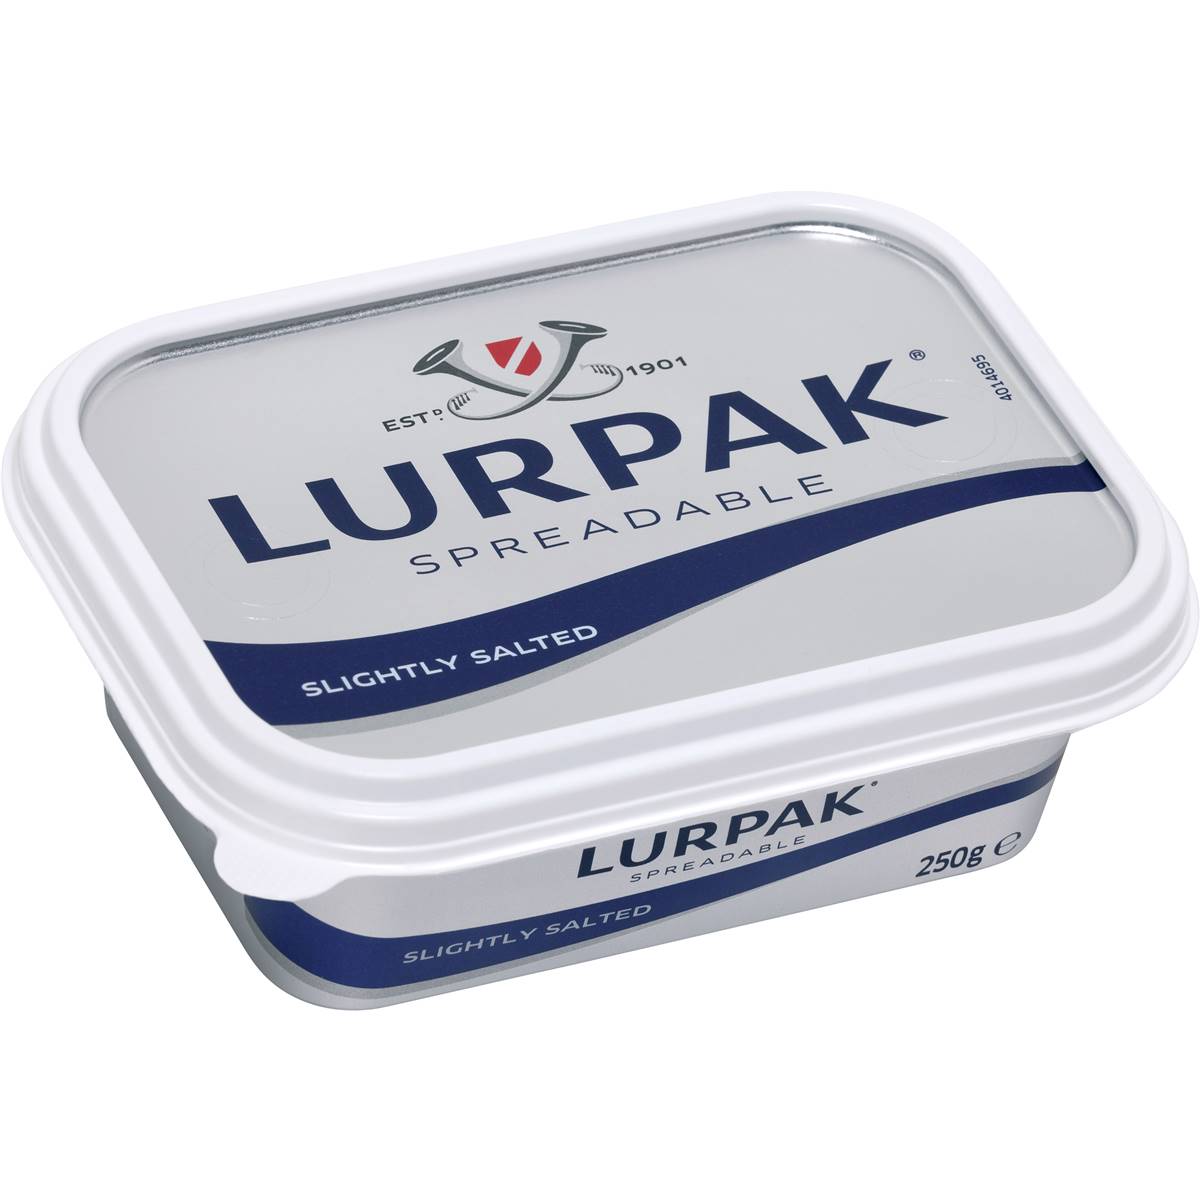 Lurpak Butter Spreadable Lightly Salted 250g